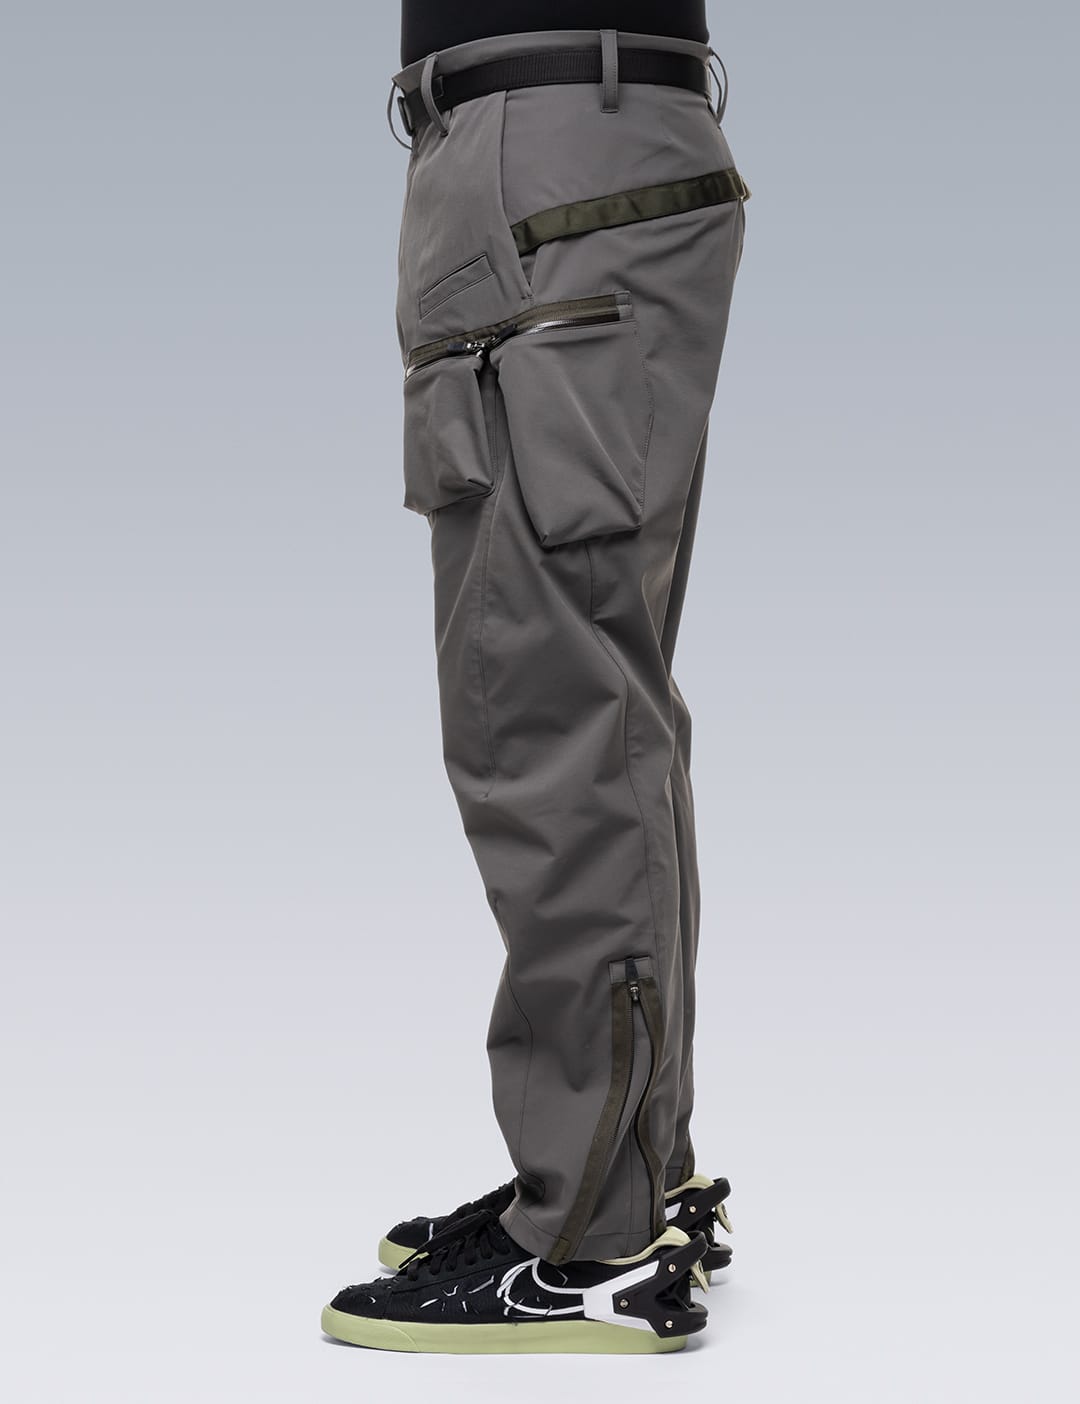 schoeller® Dryskin™ Articulated Cargo Trouser